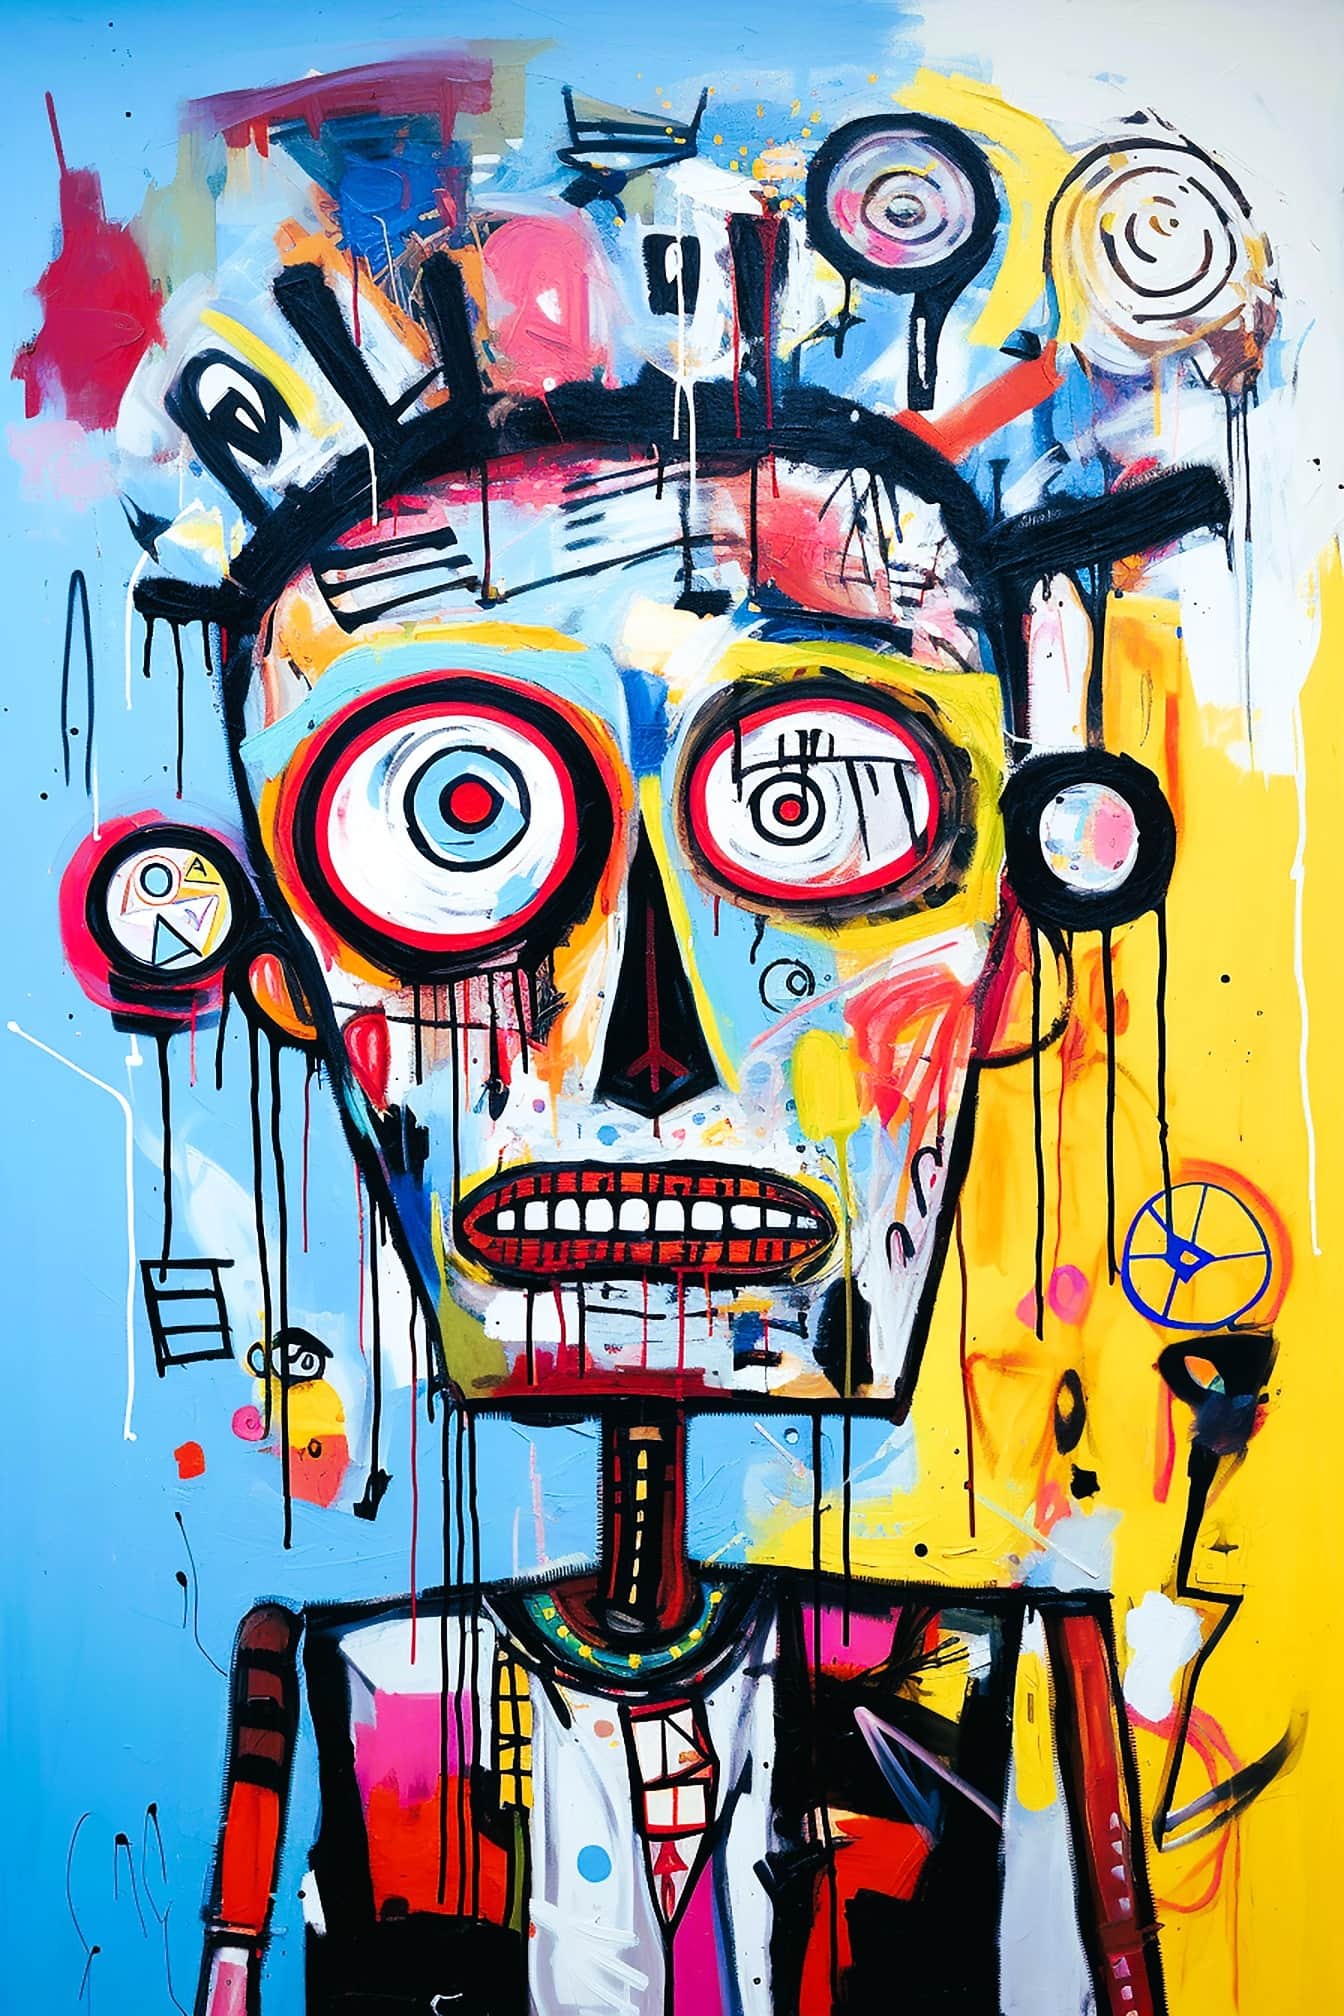 Pictura abstractă a unei persoane cu cap mare în stilul artelor plastice grunge